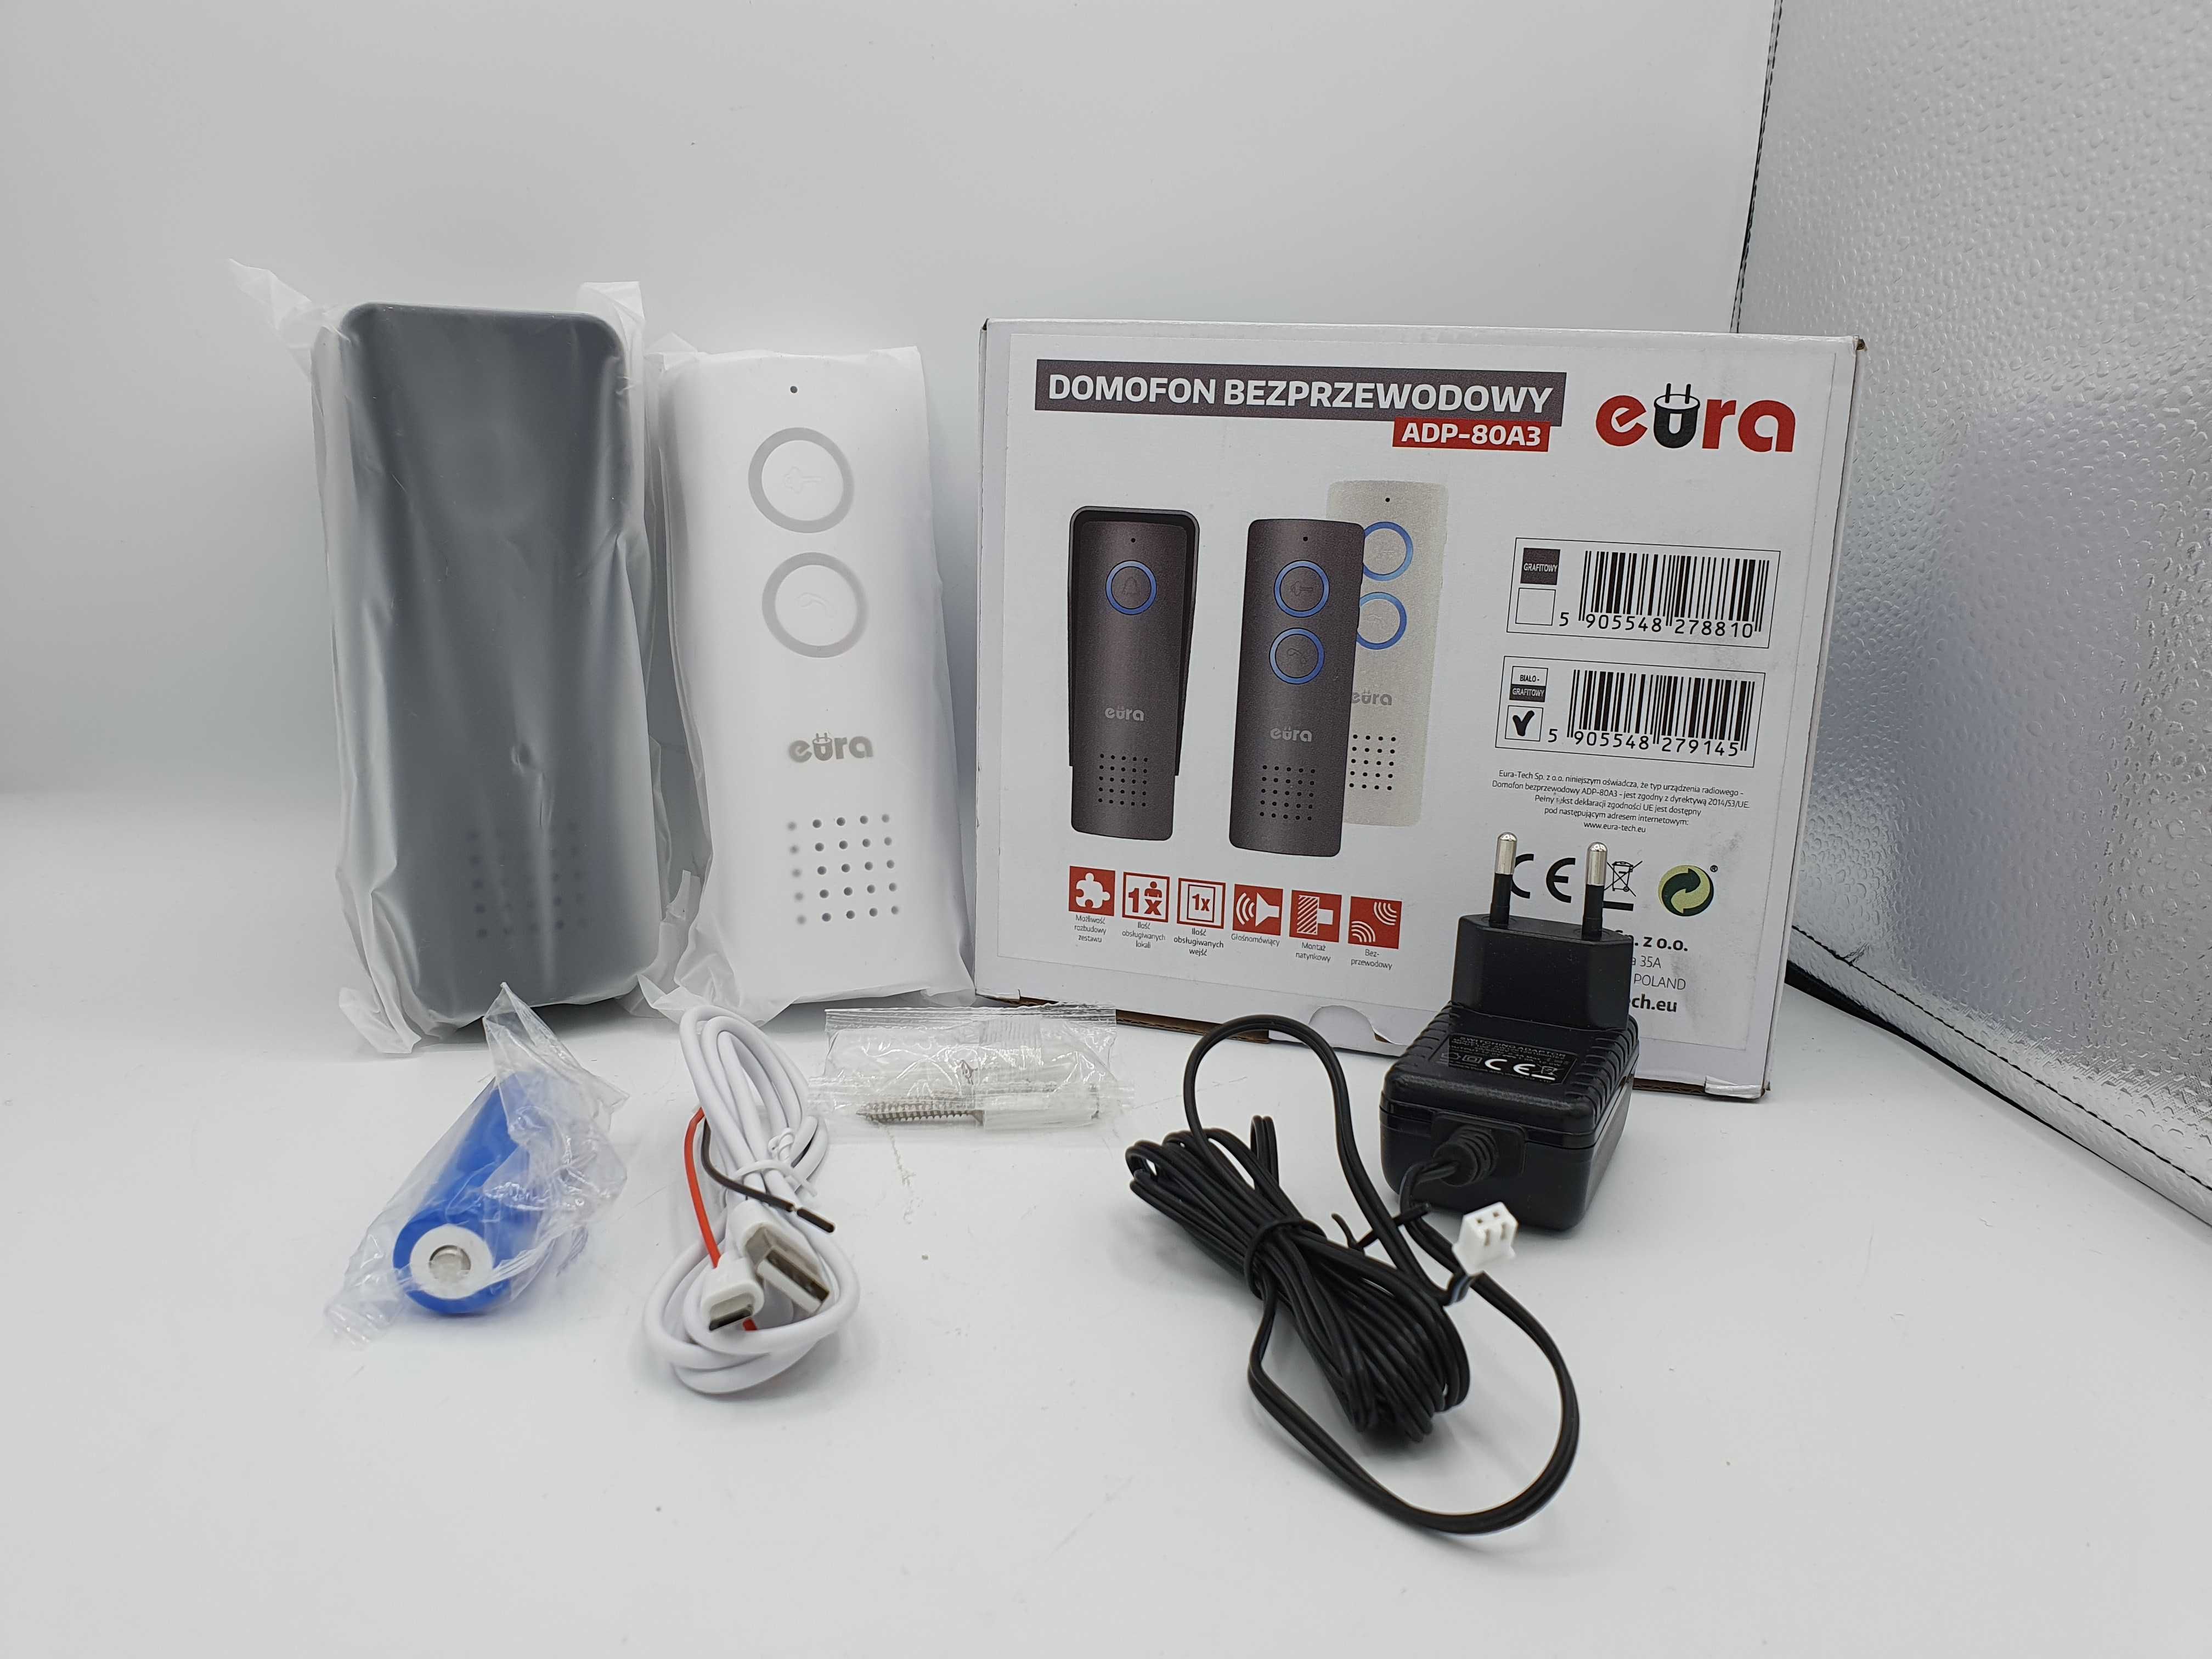 Domofon Bezprzewodowy Głośnomówiący Eura ADP-80A3